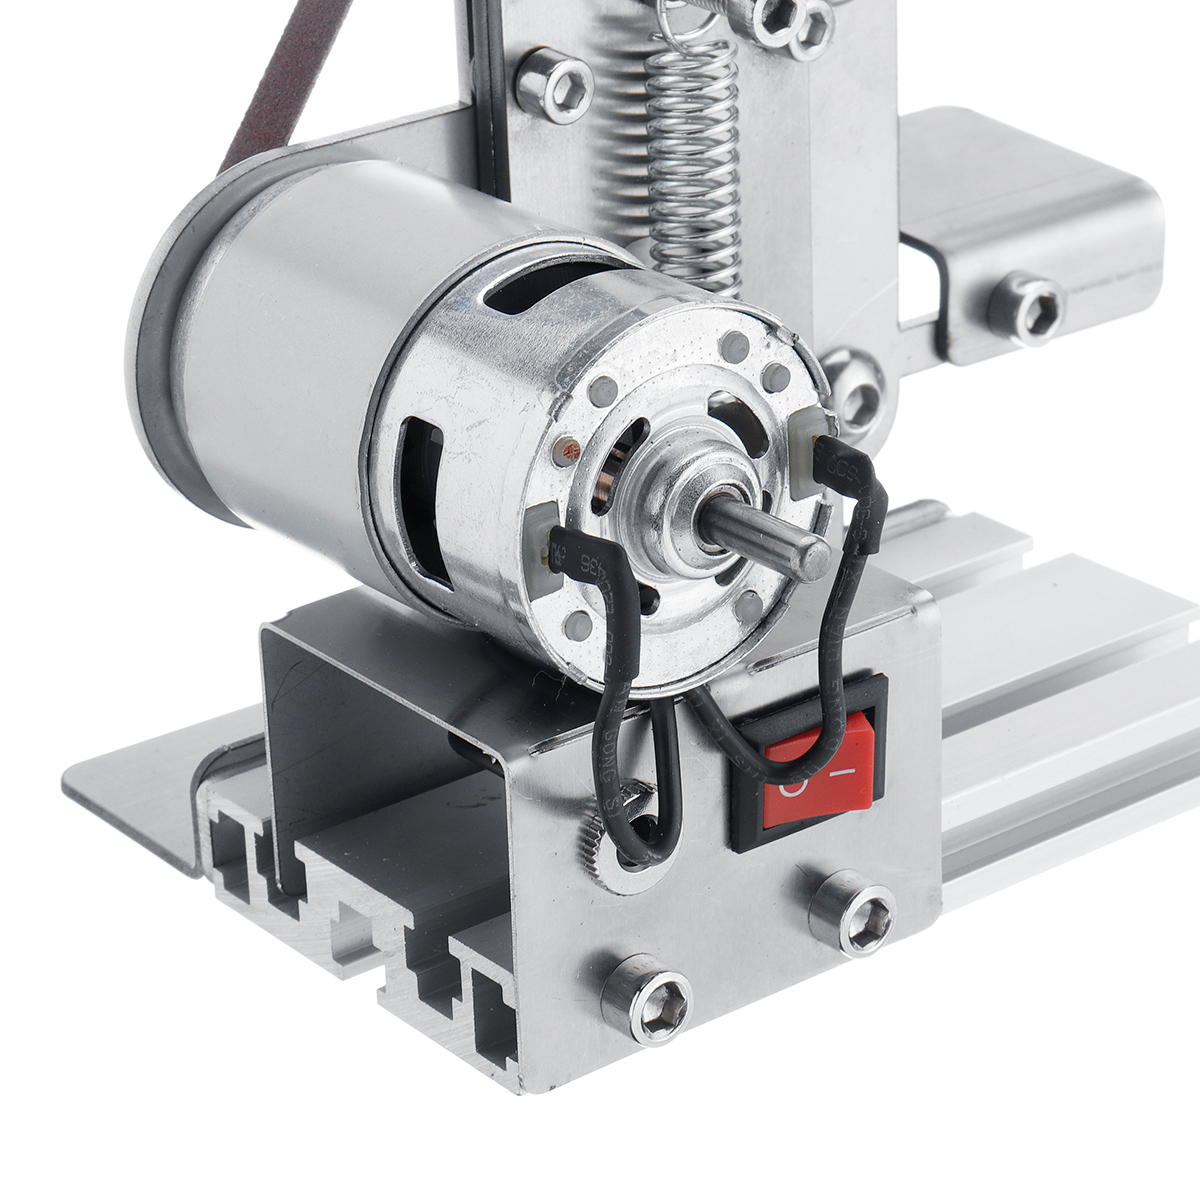 Mini-Electric-Belt-Sander-Grinder-DIY-Metal-Wood-Polishing-Grinding-Machine-Sanding-Belt-Sharpener-1515456-8